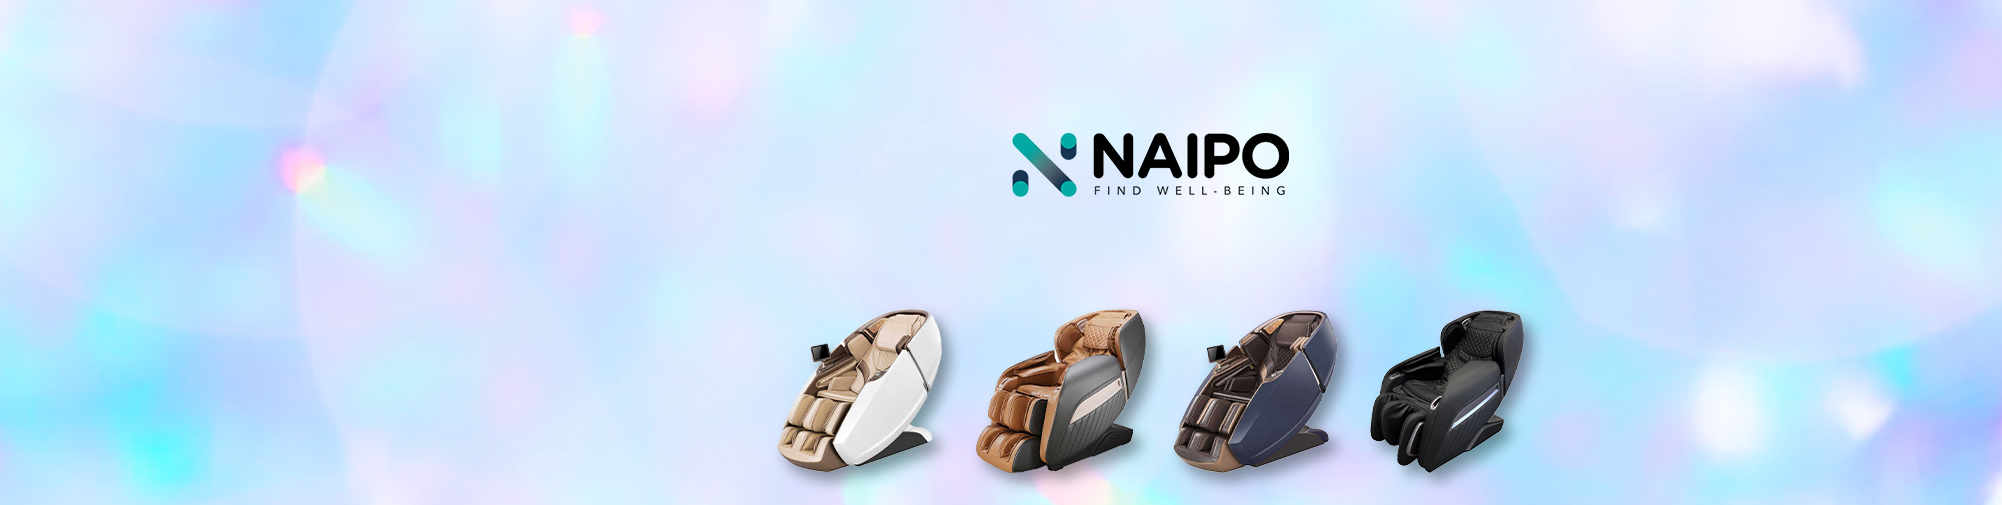 NAIPO - Tüm dünya için masaj ürünleri | Masaj koltuğu dünyası